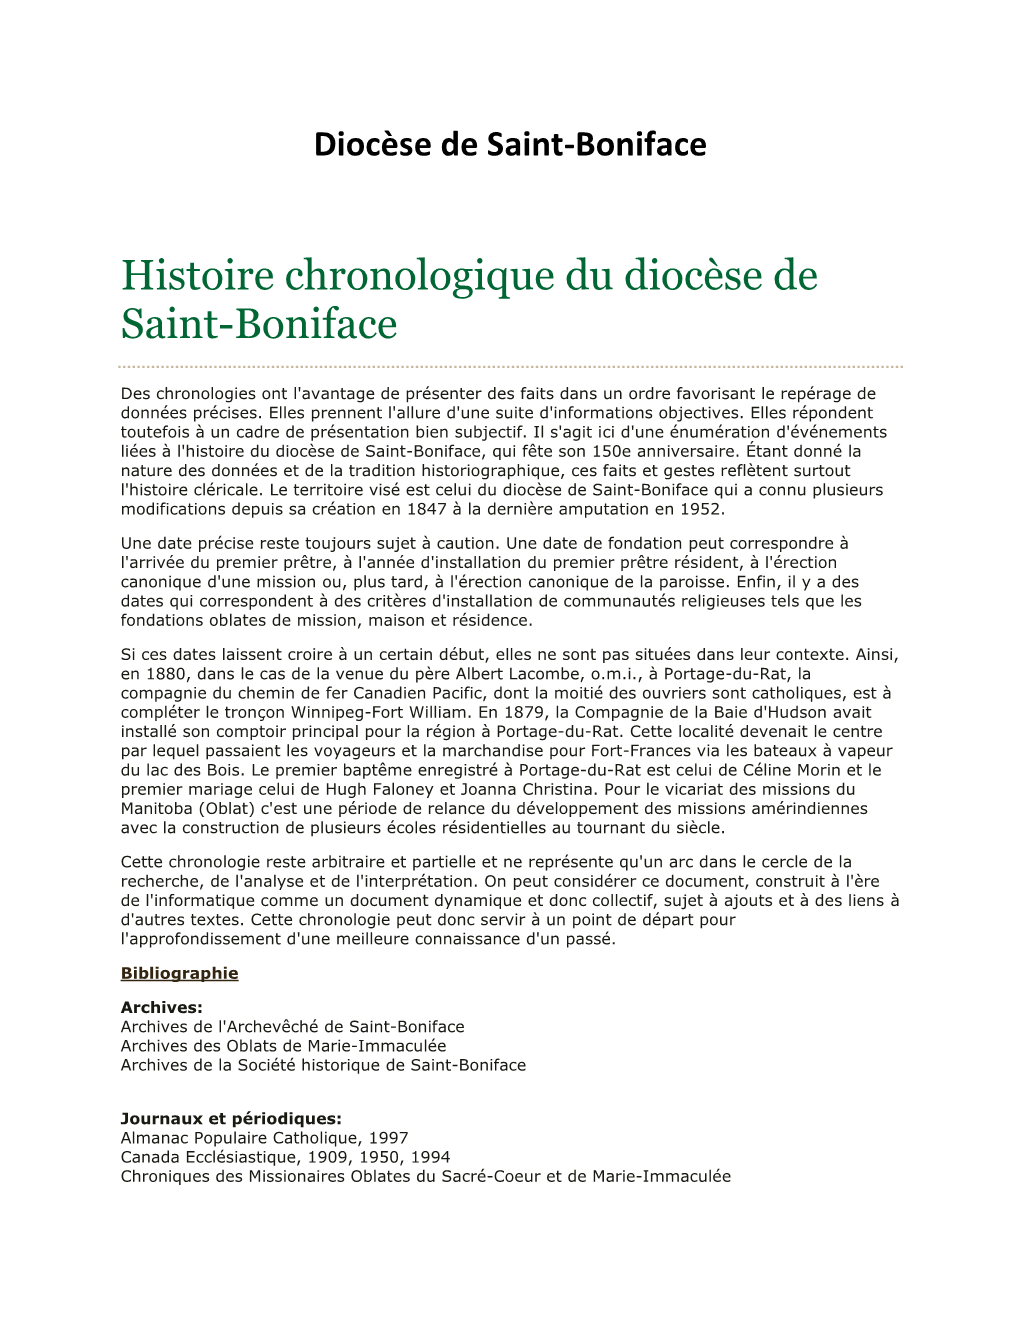 Histoire Chronologique Du Diocèse De Saint-Boniface